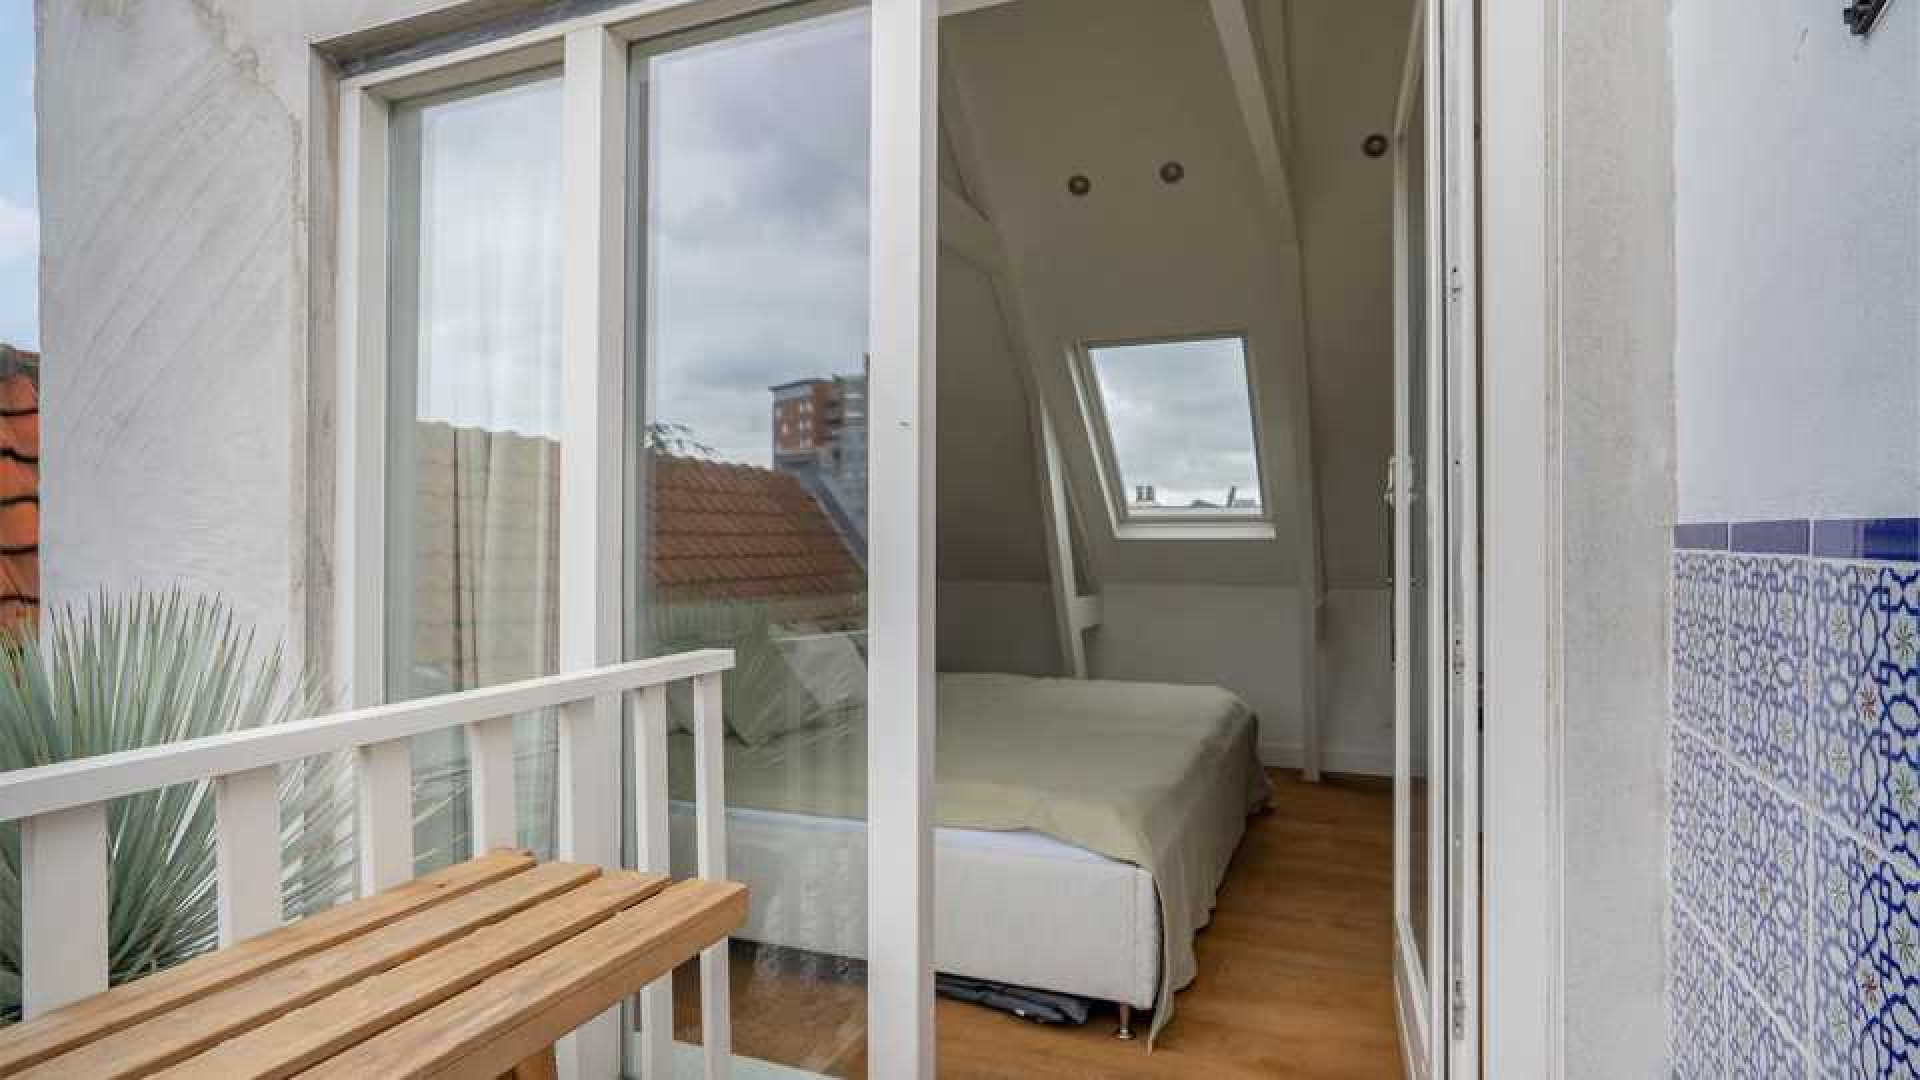 Topvoetballer Matthijs de Ligt koopt zeer luxe appartement in de Amsterdamse Pijp buurt. Zie foto's 13